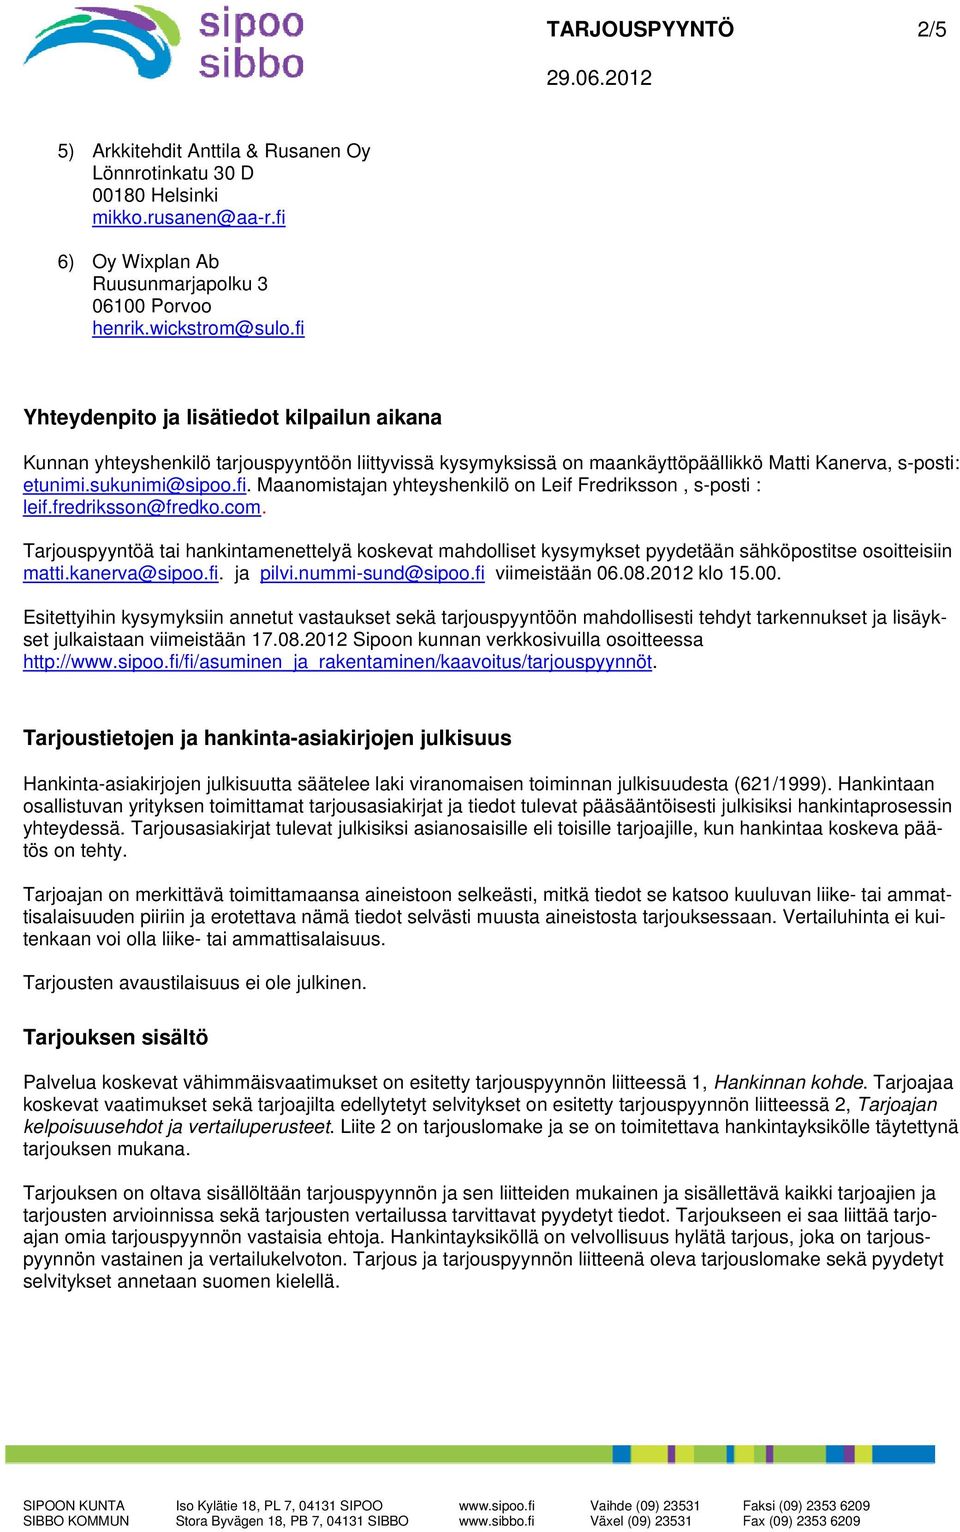 fredriksson@fredko.com. Tarjouspyyntöä tai hankintamenettelyä koskevat mahdolliset kysymykset pyydetään sähköpostitse osoitteisiin matti.kanerva@sipoo.fi. ja pilvi.nummi-sund@sipoo.fi viimeistään 06.